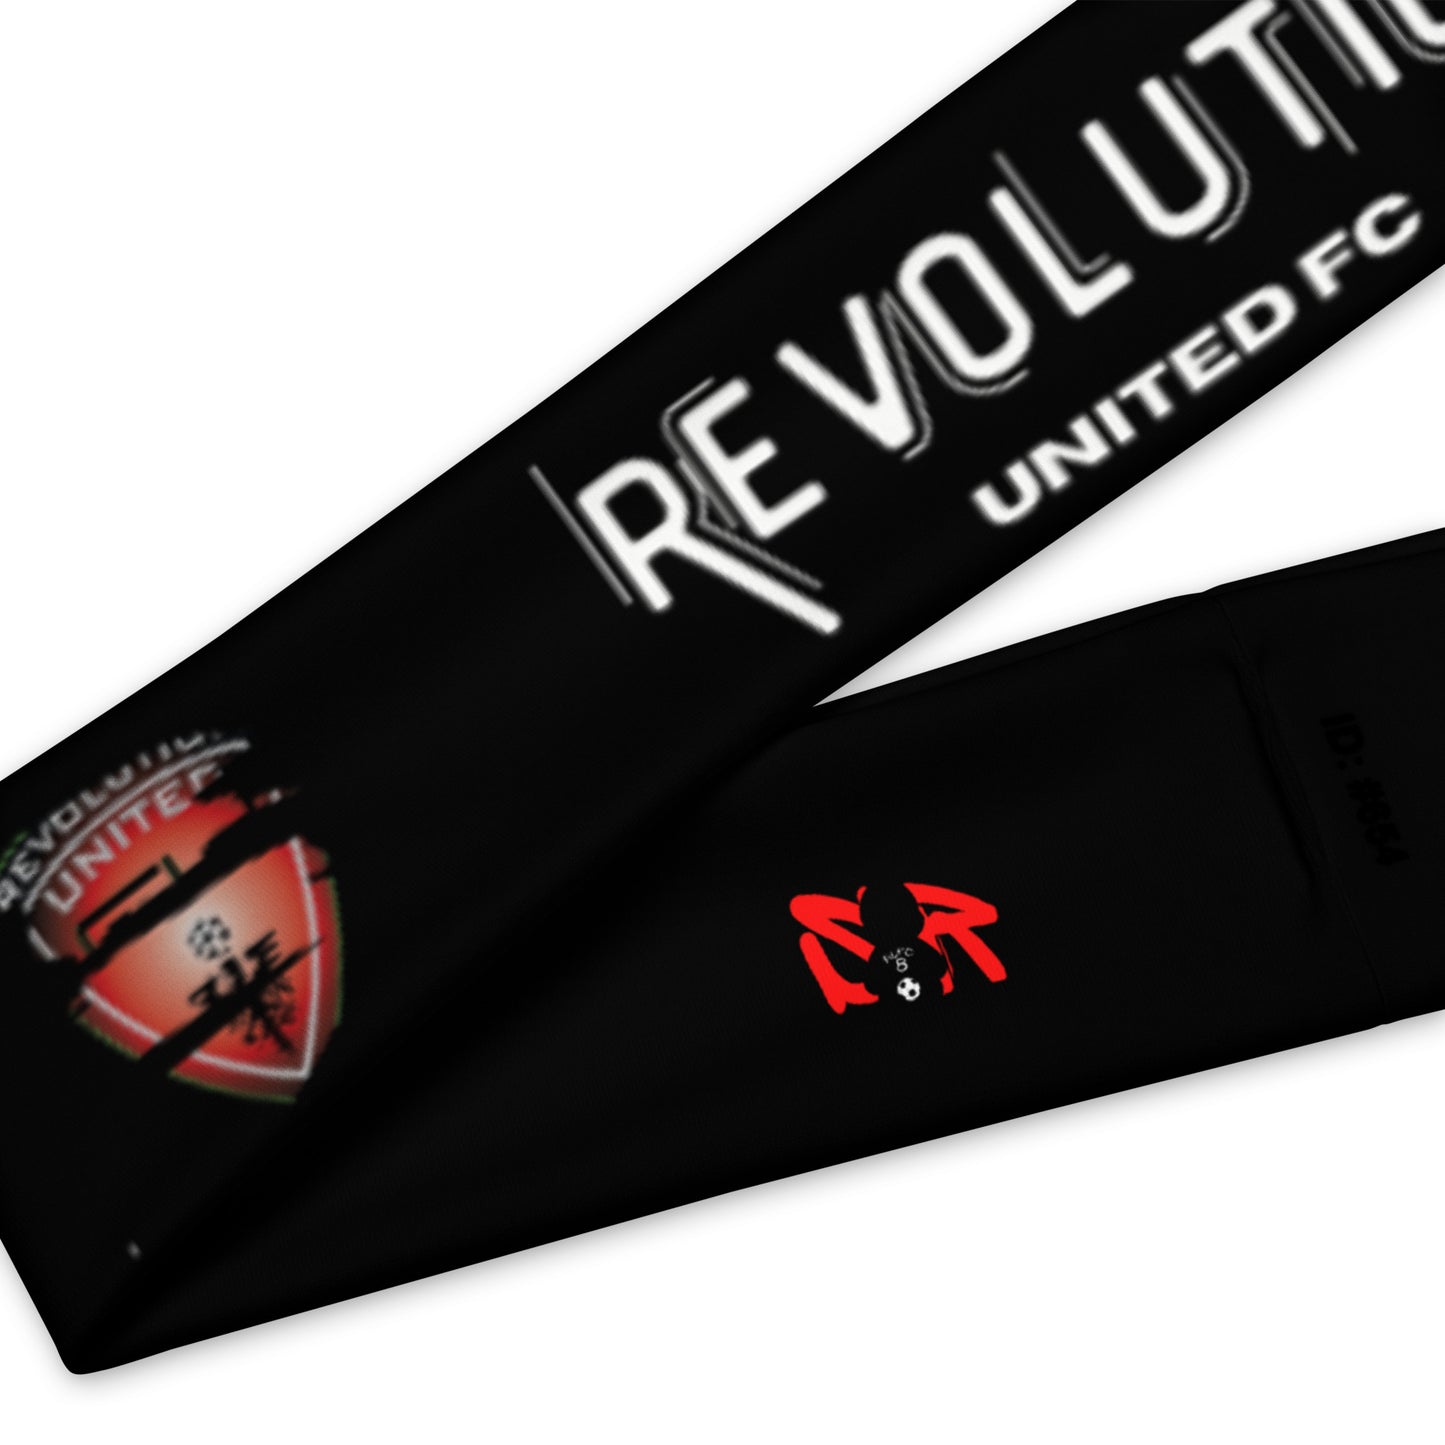 Revolution Logo Headband